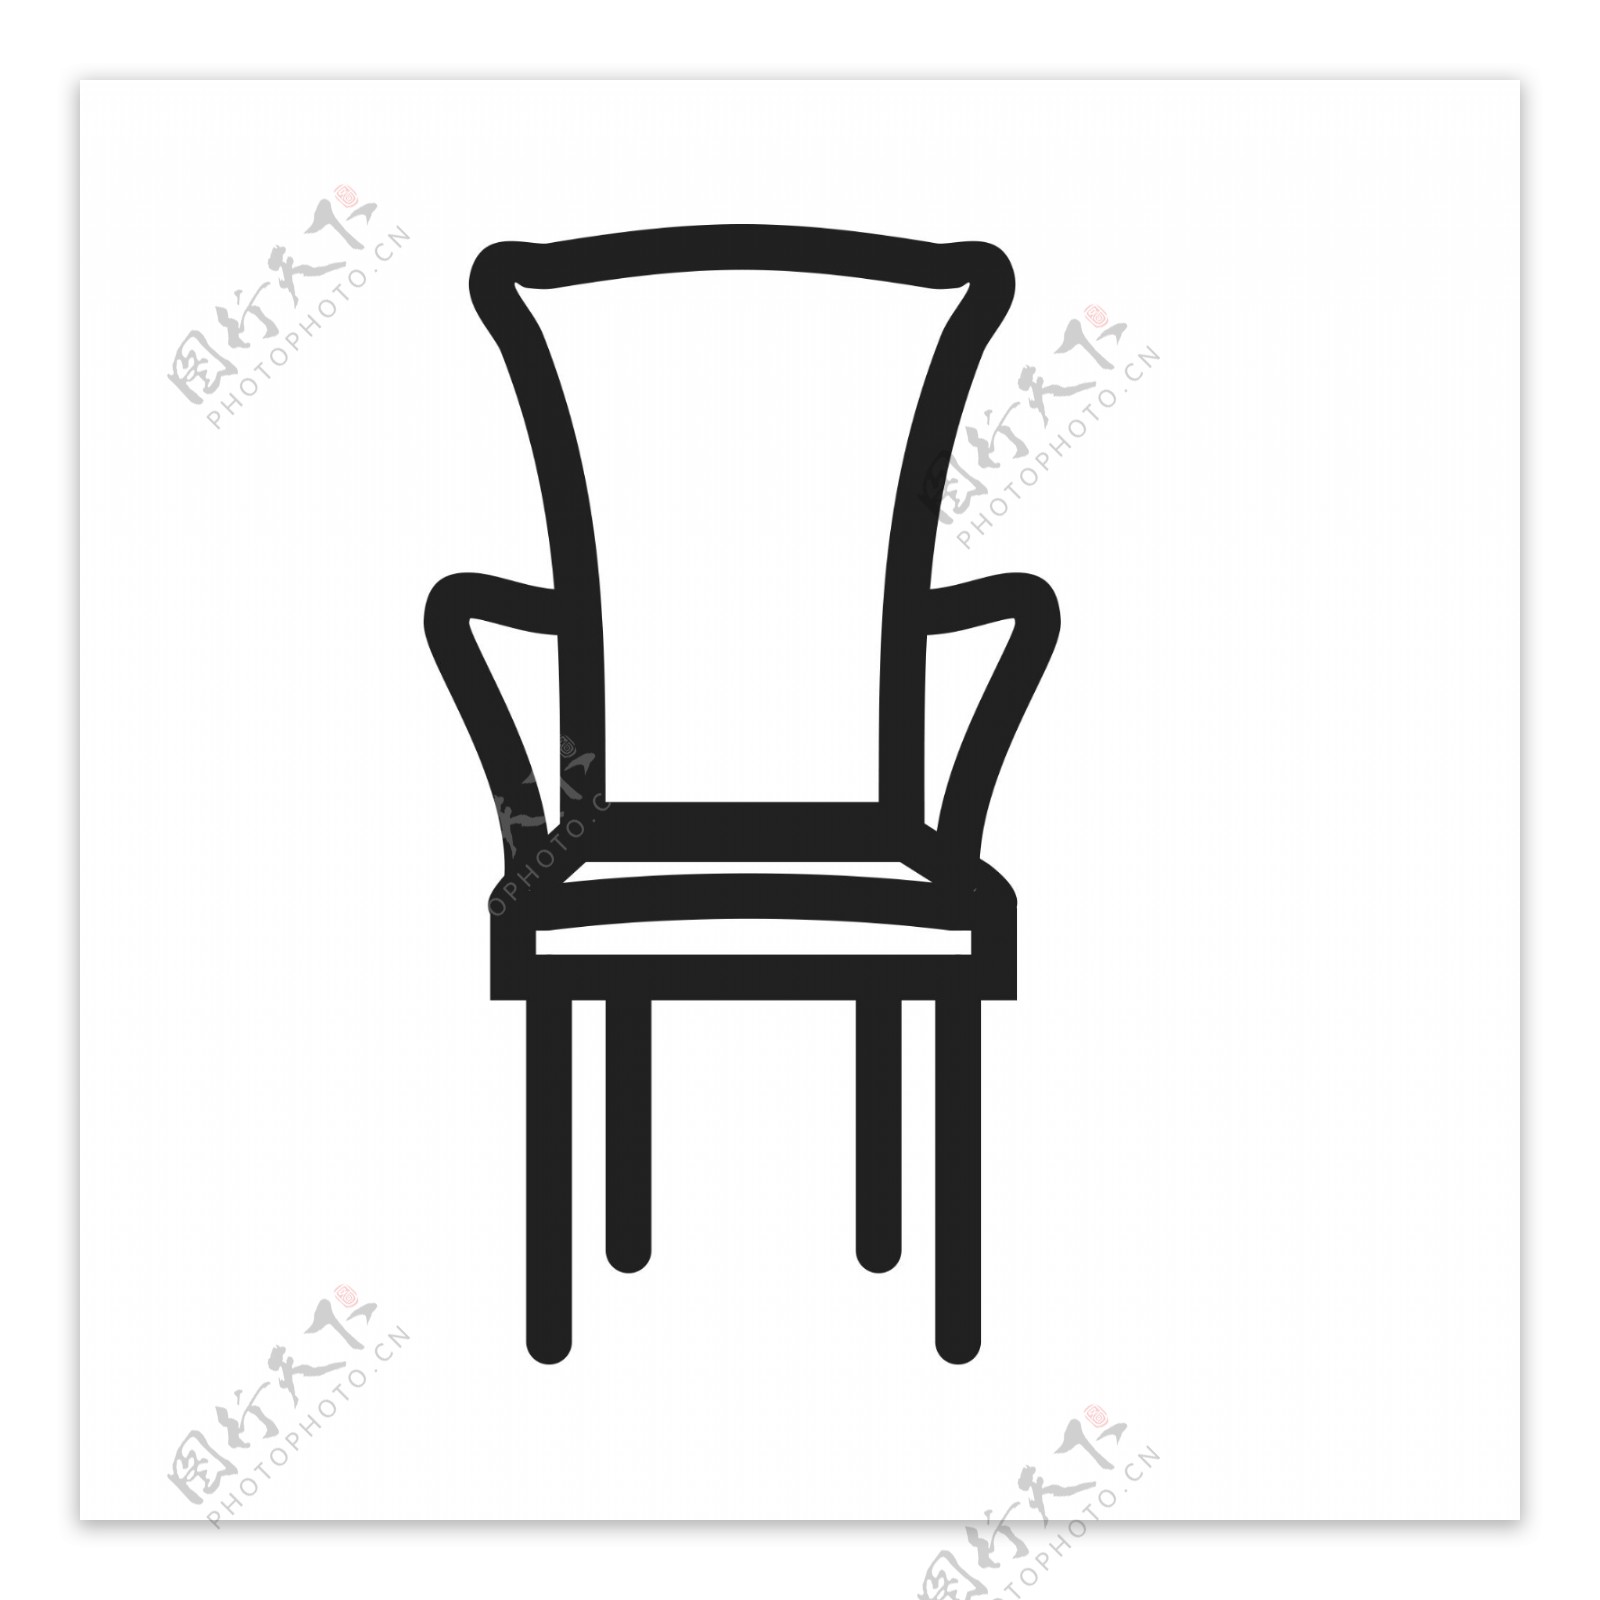 扁平化椅子